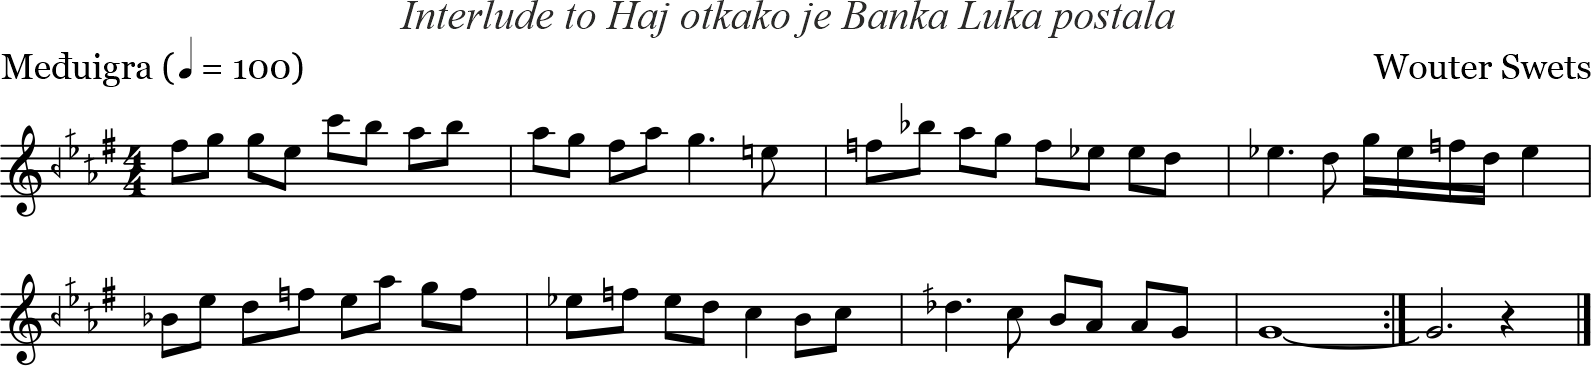 Interlude Haj otkako je Banja Luka postala (W. Swets, 1978)